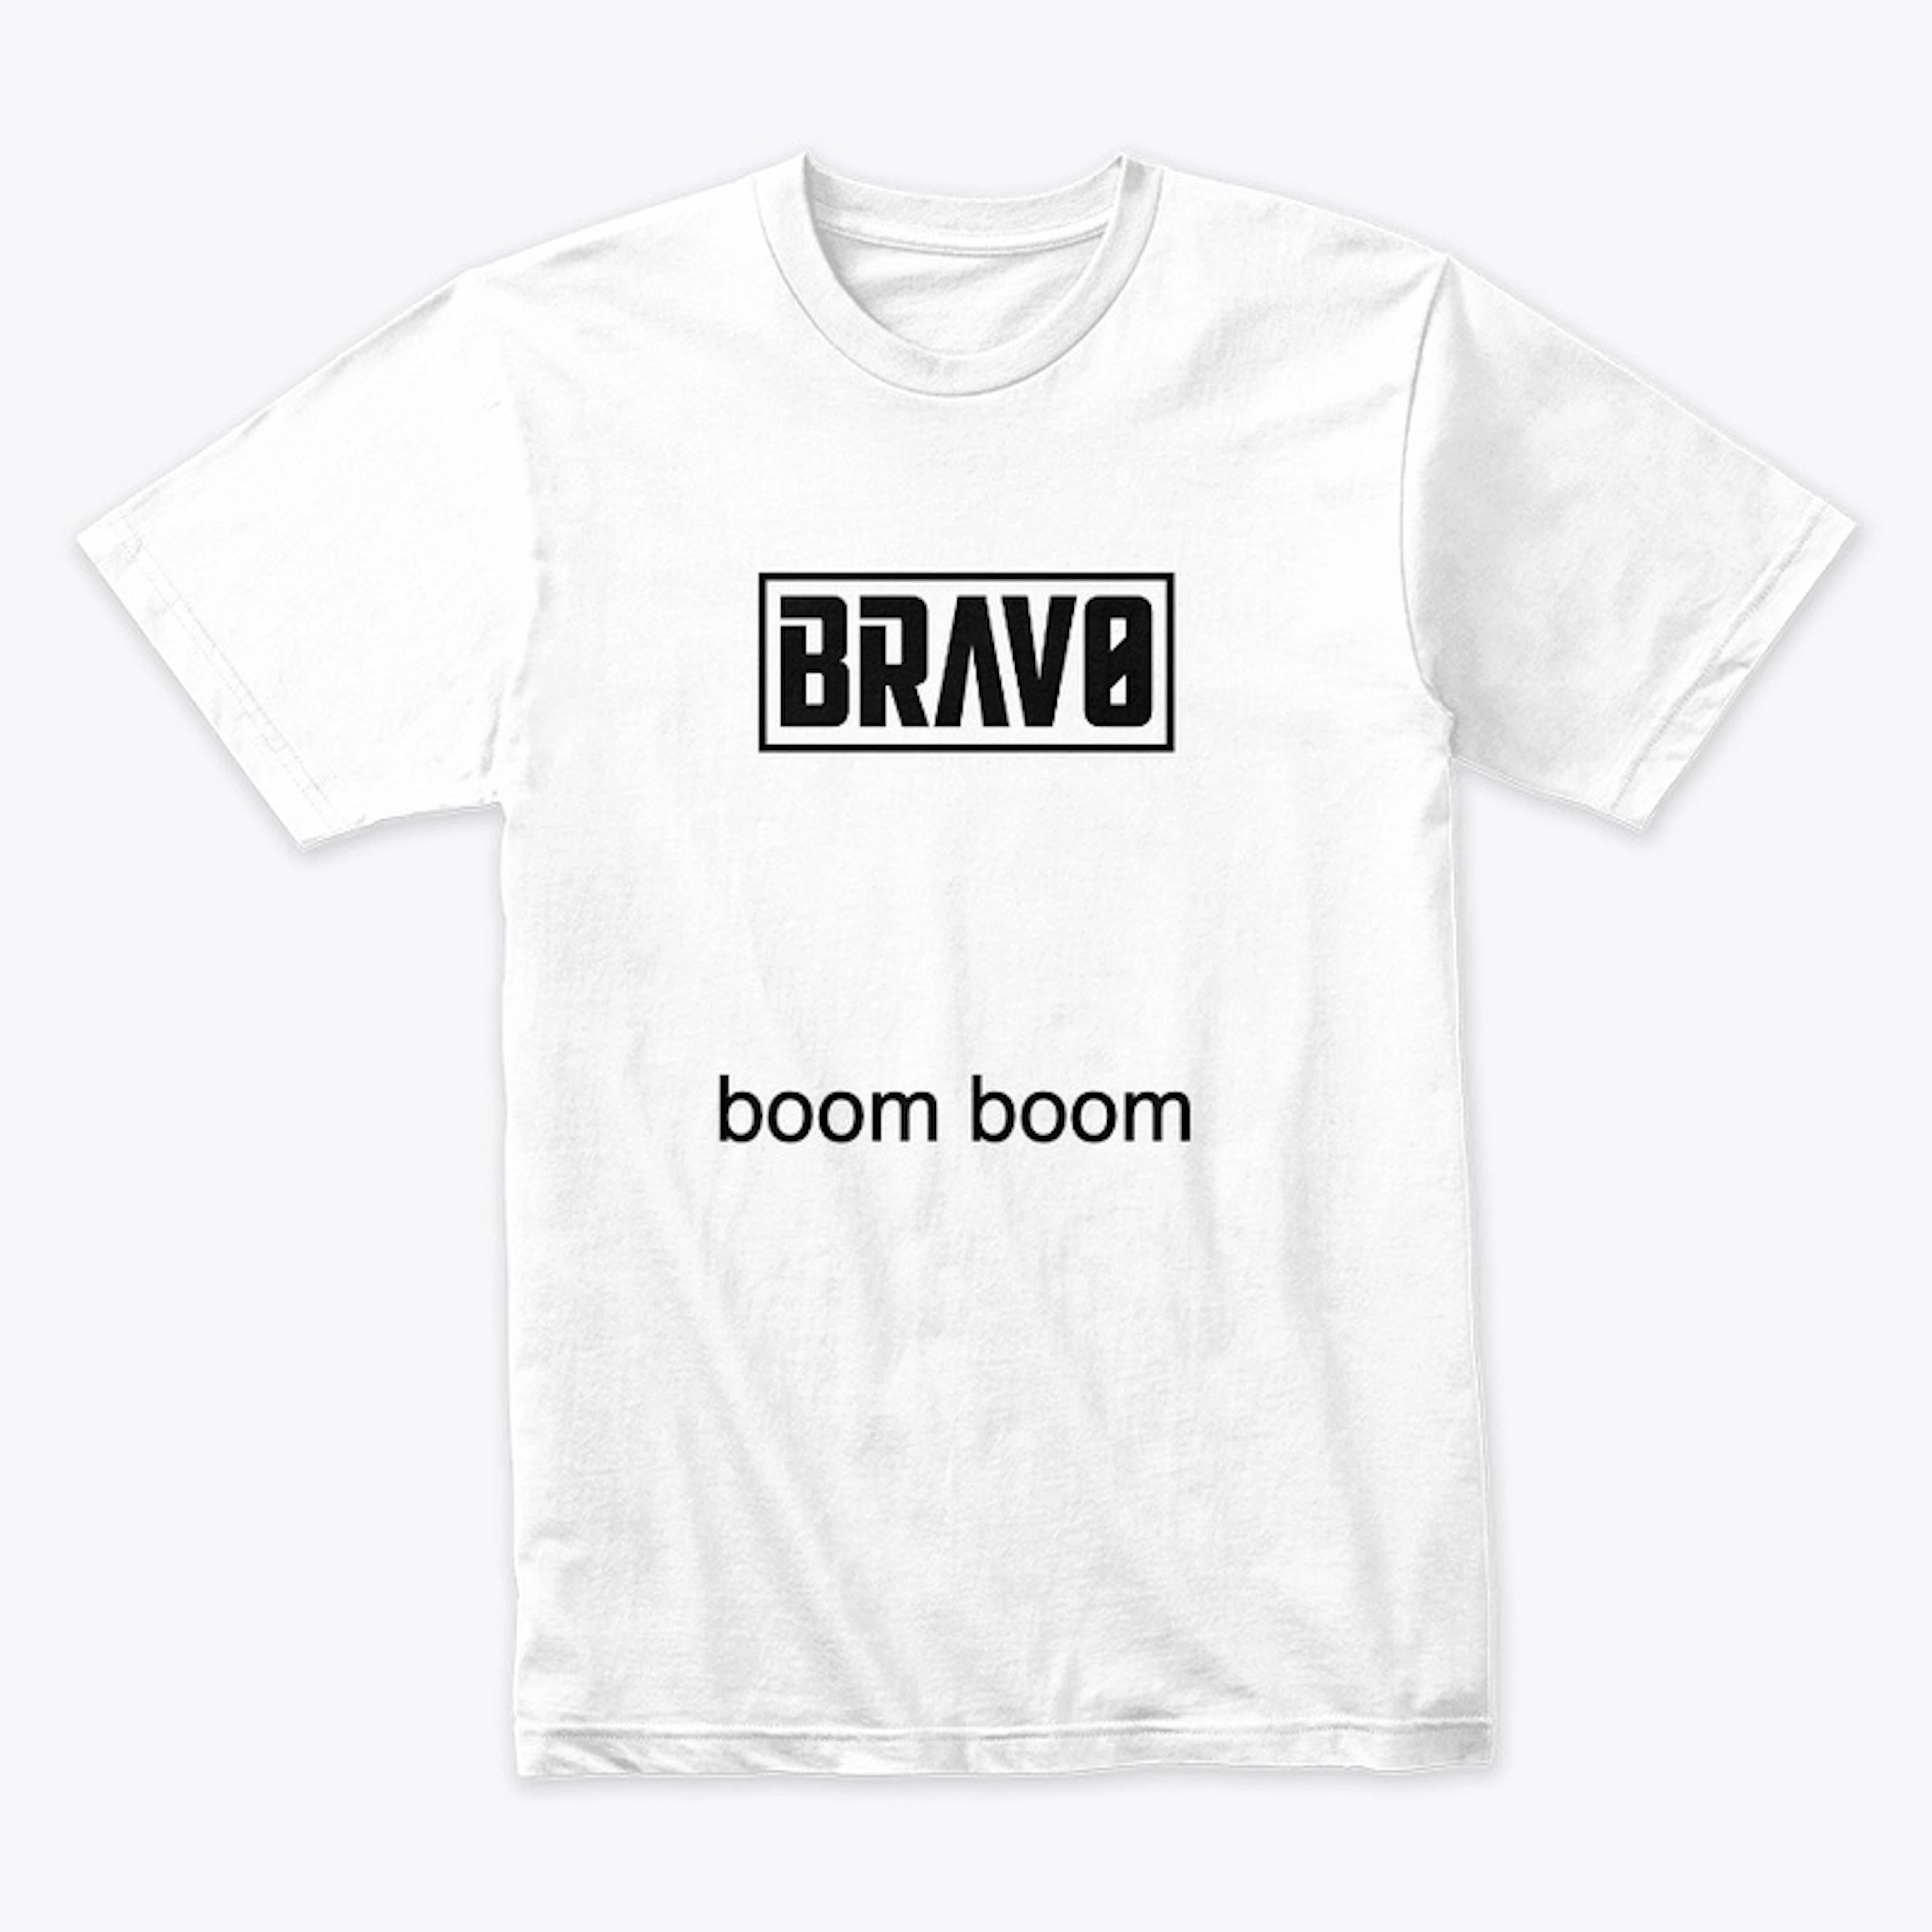 Brav0 - Boom Boom